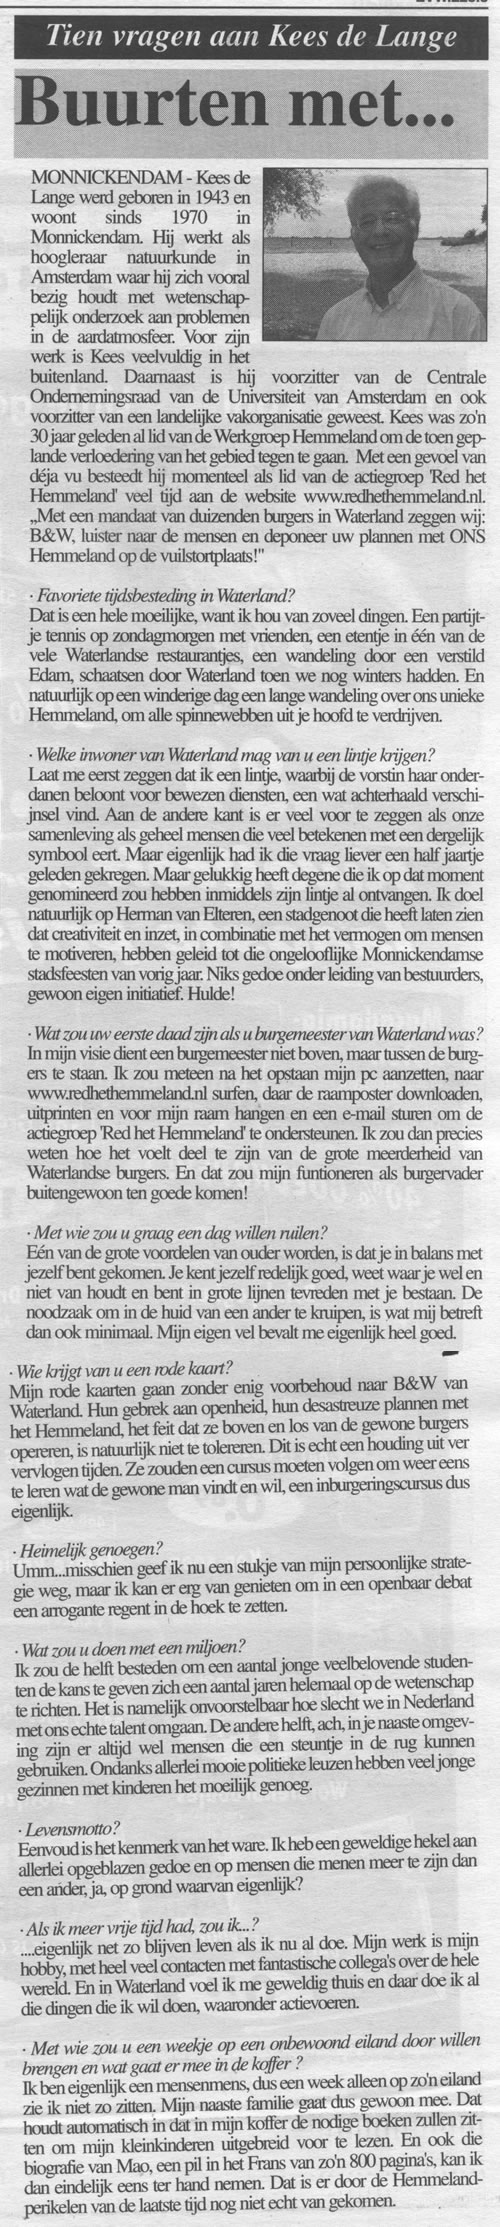 Artikel Buurten met... Witte Weekblad 23 aug 2006